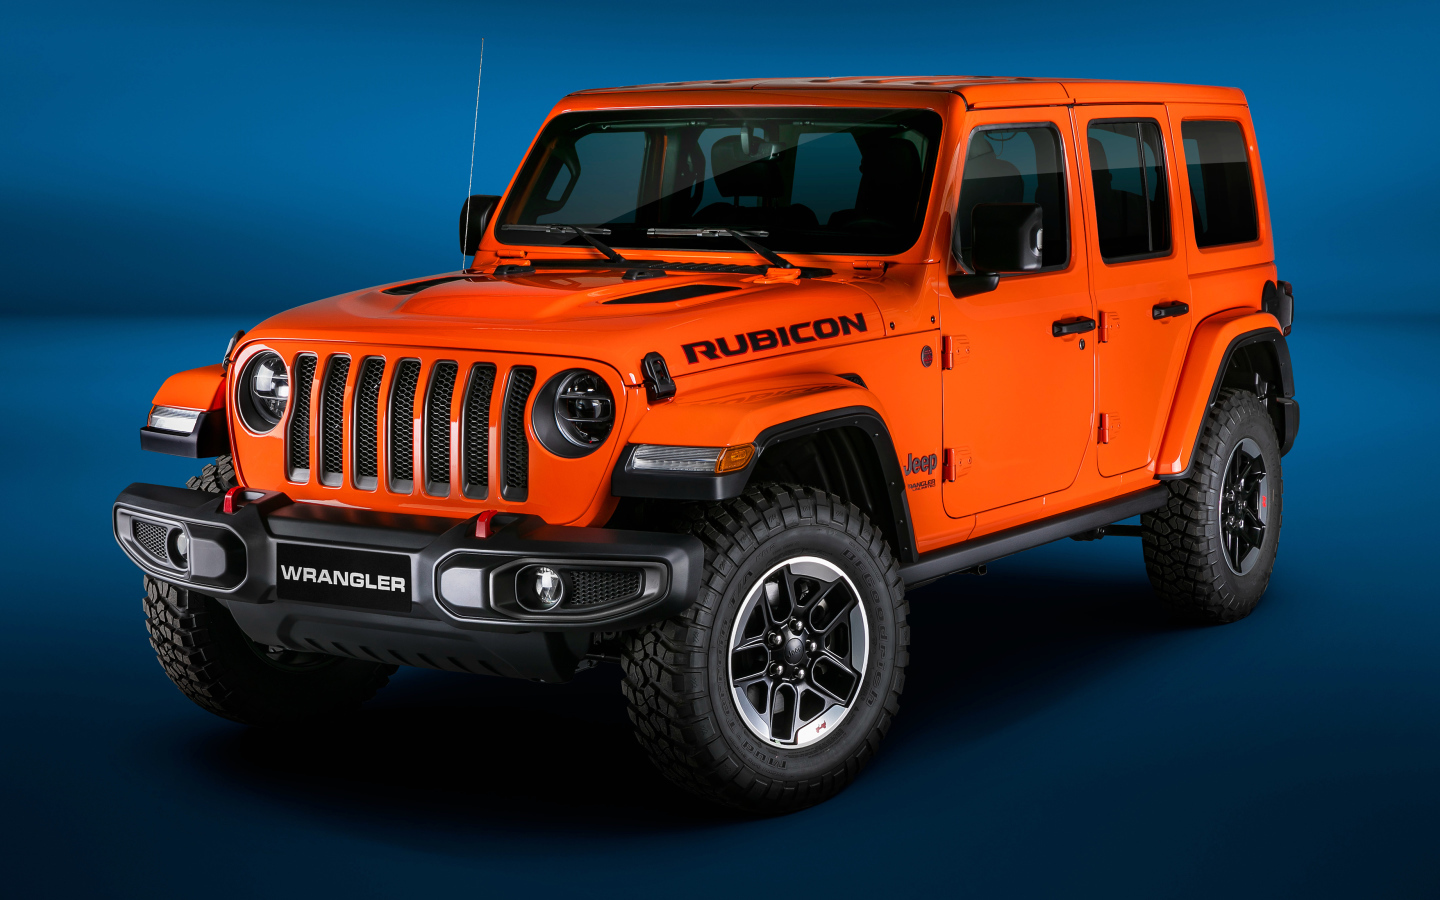 Оранжевый Jeep Wrangler Unlimited Rubicon 2018 года на синем фоне